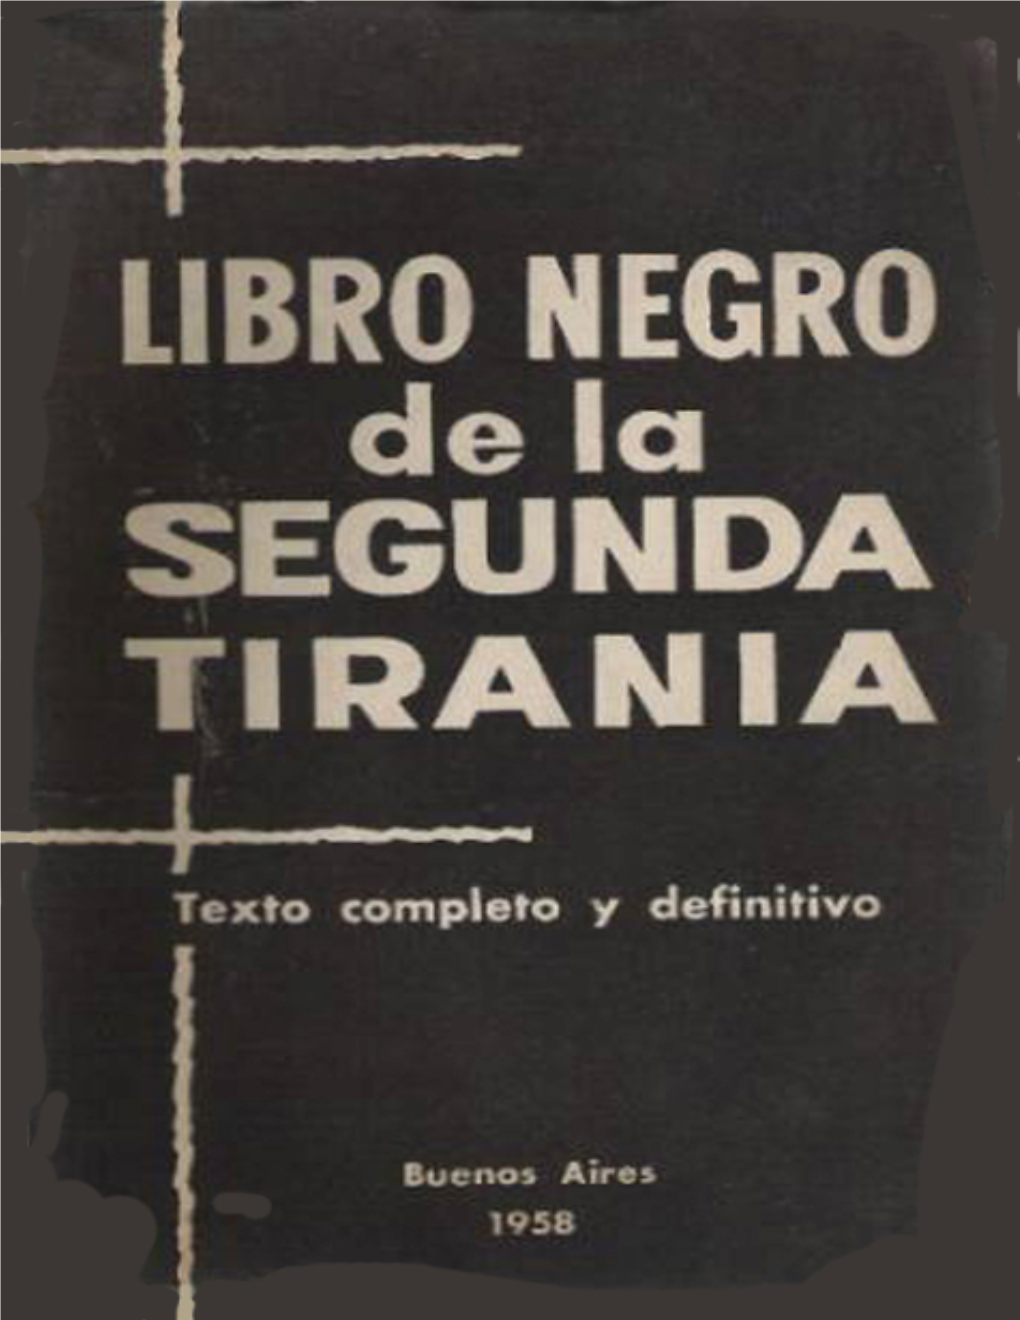 Libro-Negro-De-La-Segunda-Tirania